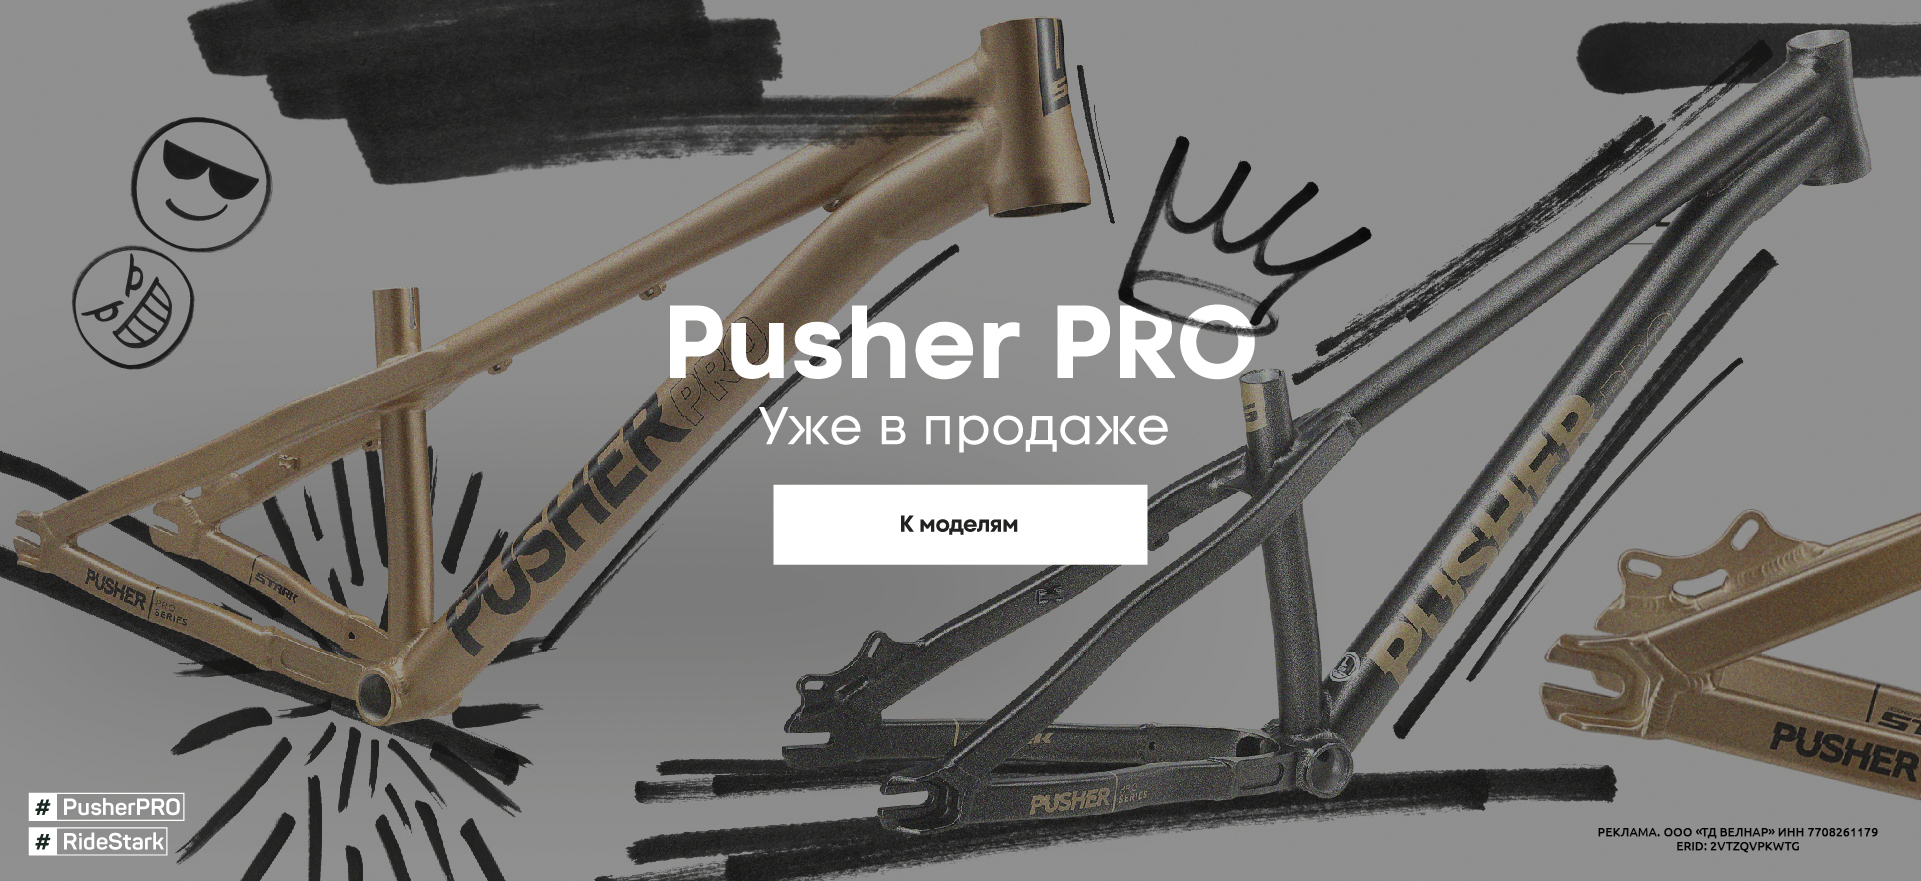 Pusher Pro